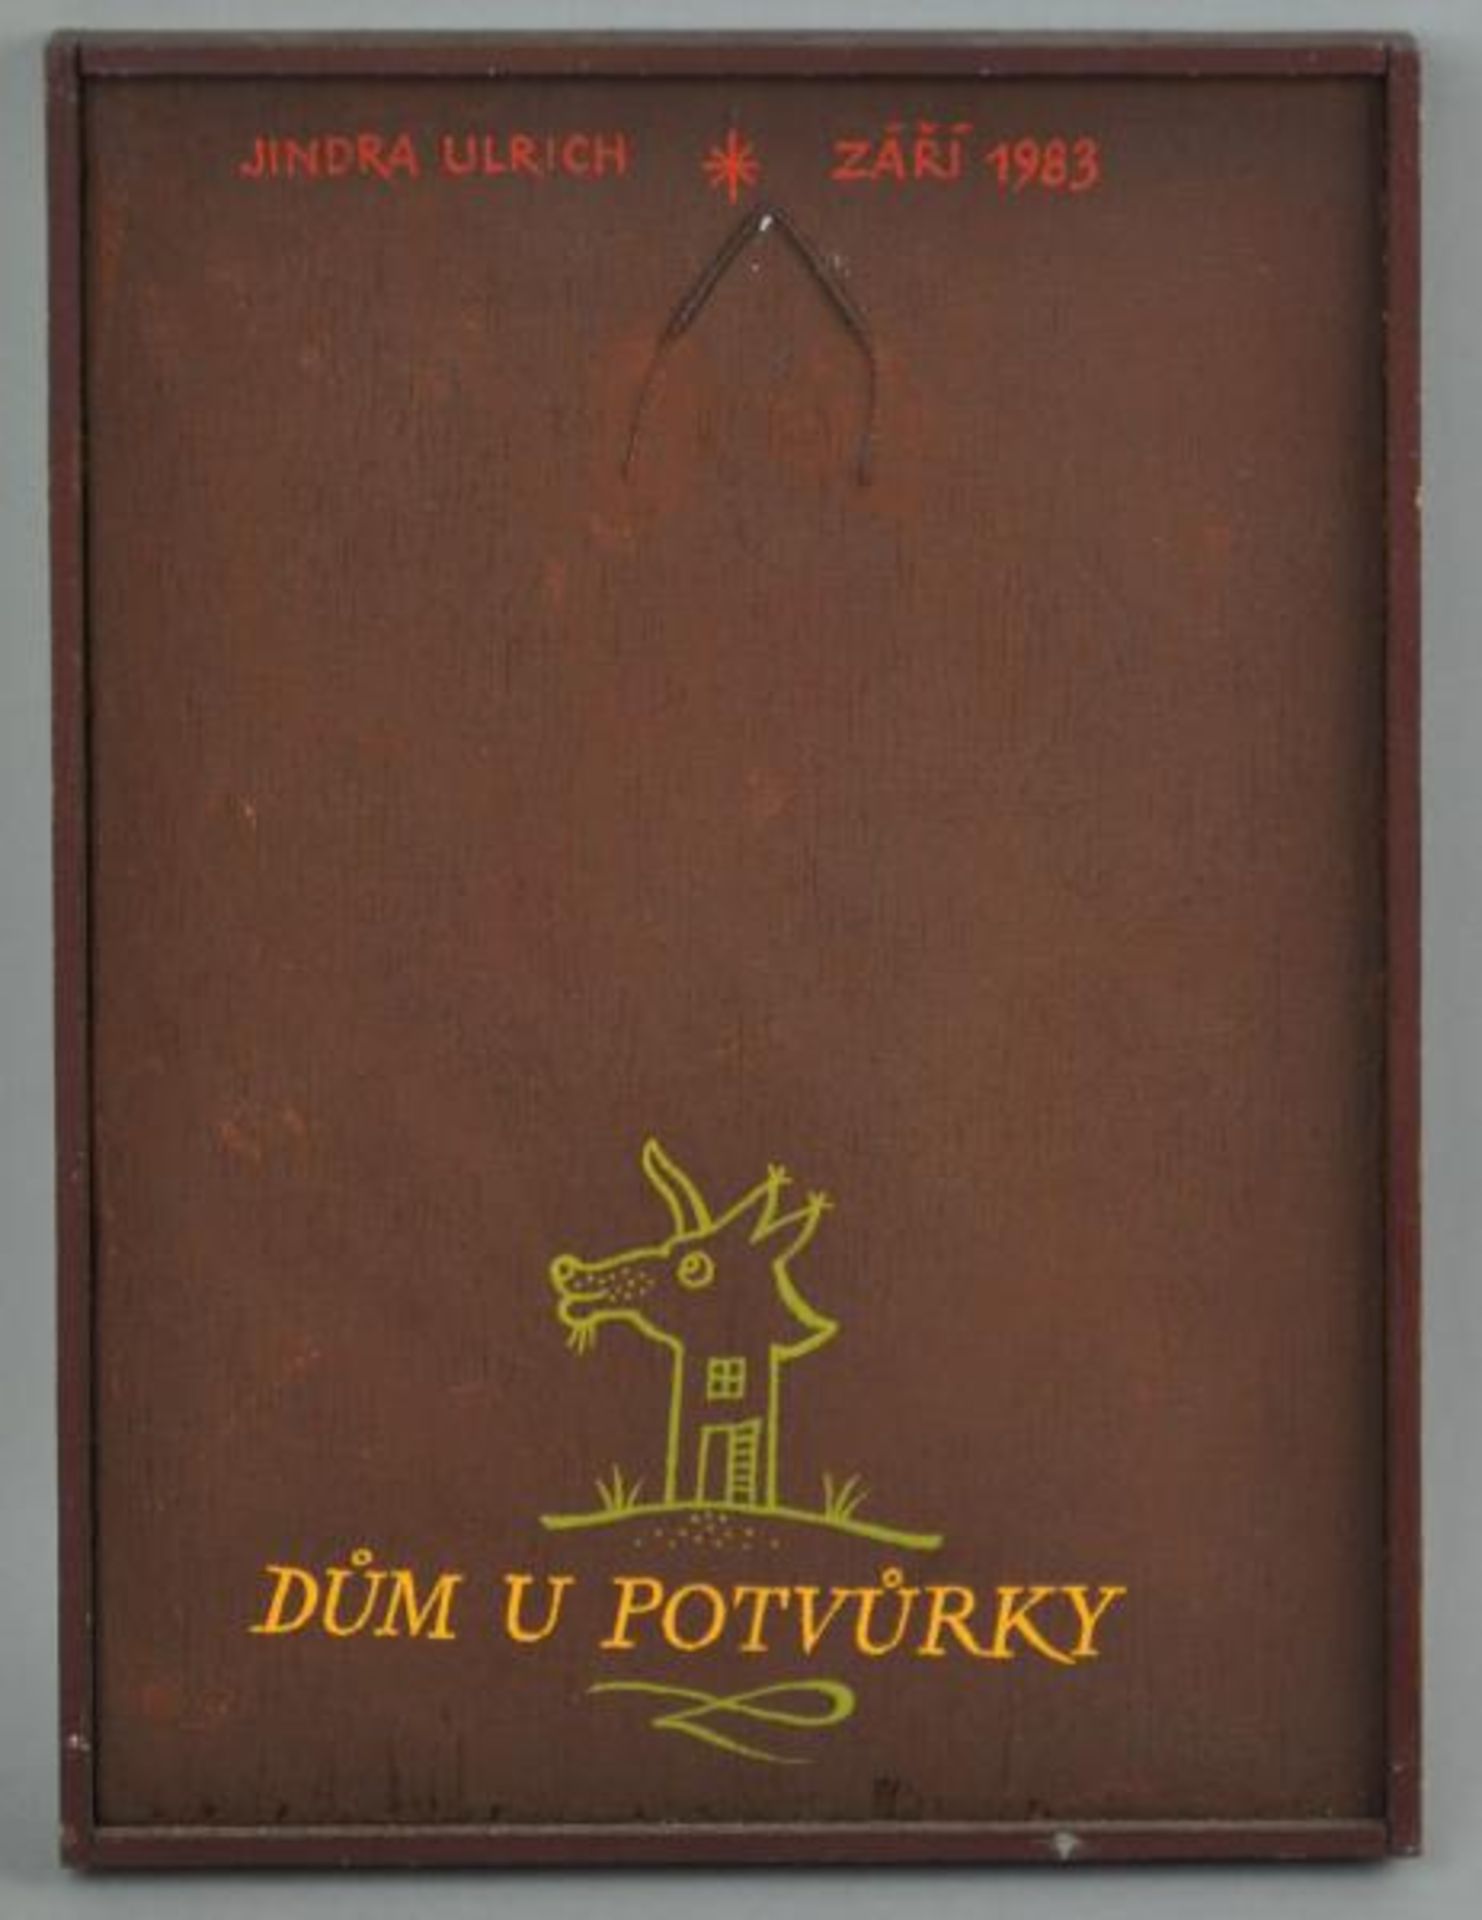 ULRICH Jindrich (1950 Prag) "Blick auf Bibliothek" mit Aufschrift "dum u potvurky", geöffnete - Bild 4 aus 4